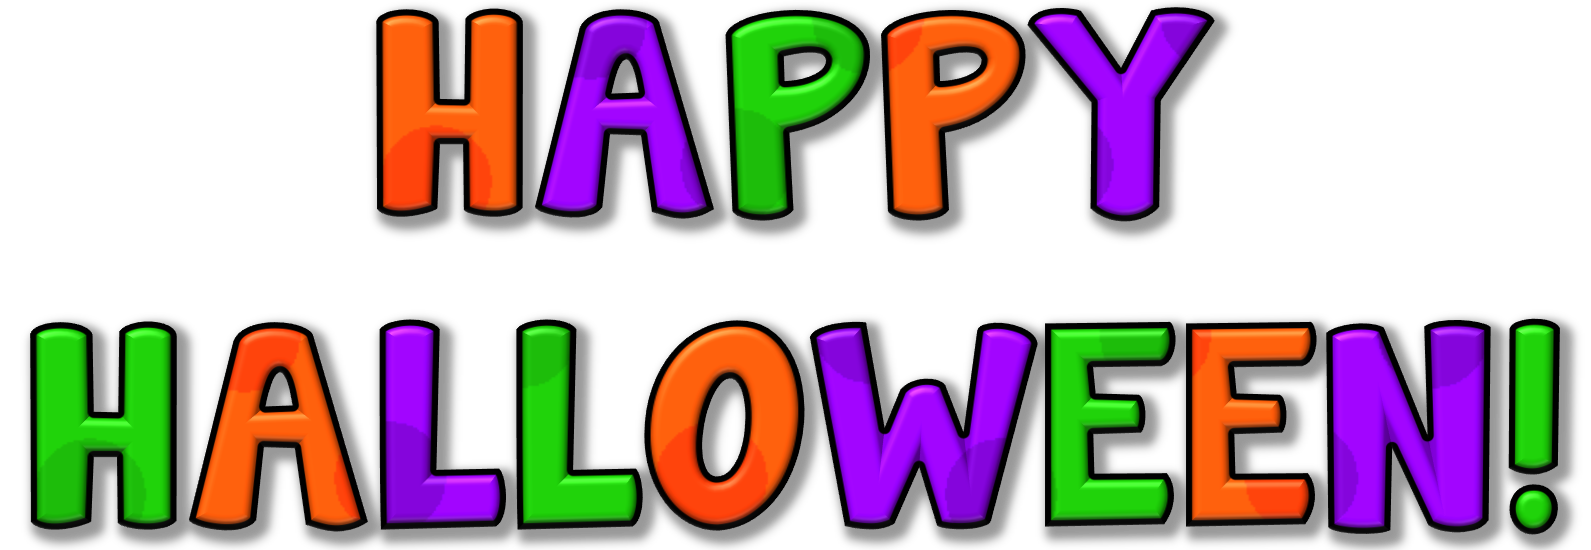 happy halloween clipart - Happy Halloween Clipart